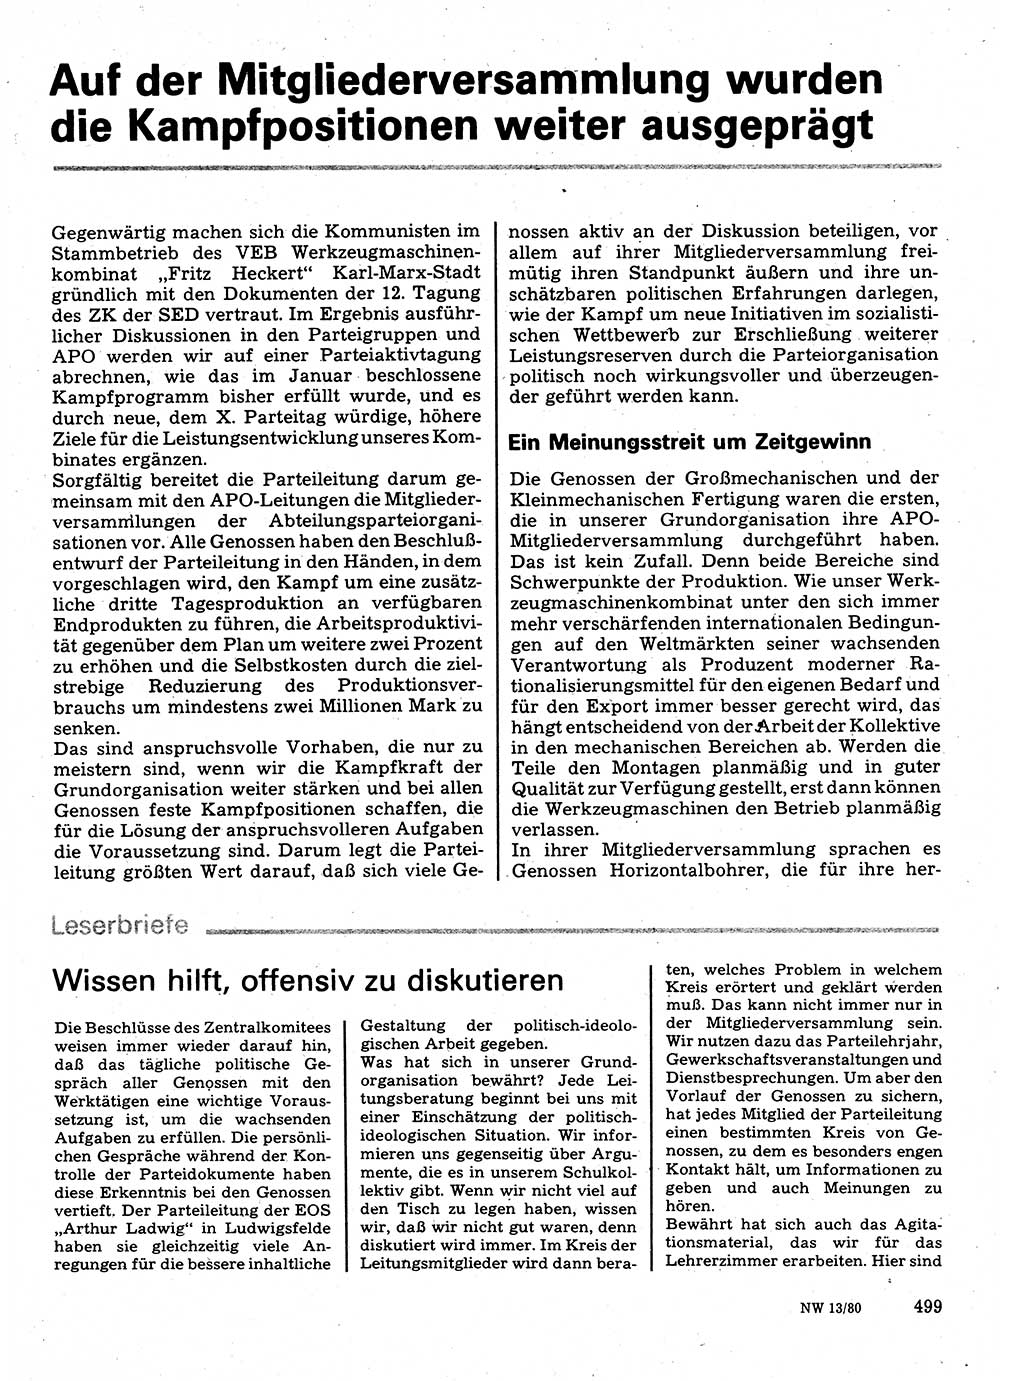 Neuer Weg (NW), Organ des Zentralkomitees (ZK) der SED (Sozialistische Einheitspartei Deutschlands) für Fragen des Parteilebens, 35. Jahrgang [Deutsche Demokratische Republik (DDR)] 1980, Seite 499 (NW ZK SED DDR 1980, S. 499)